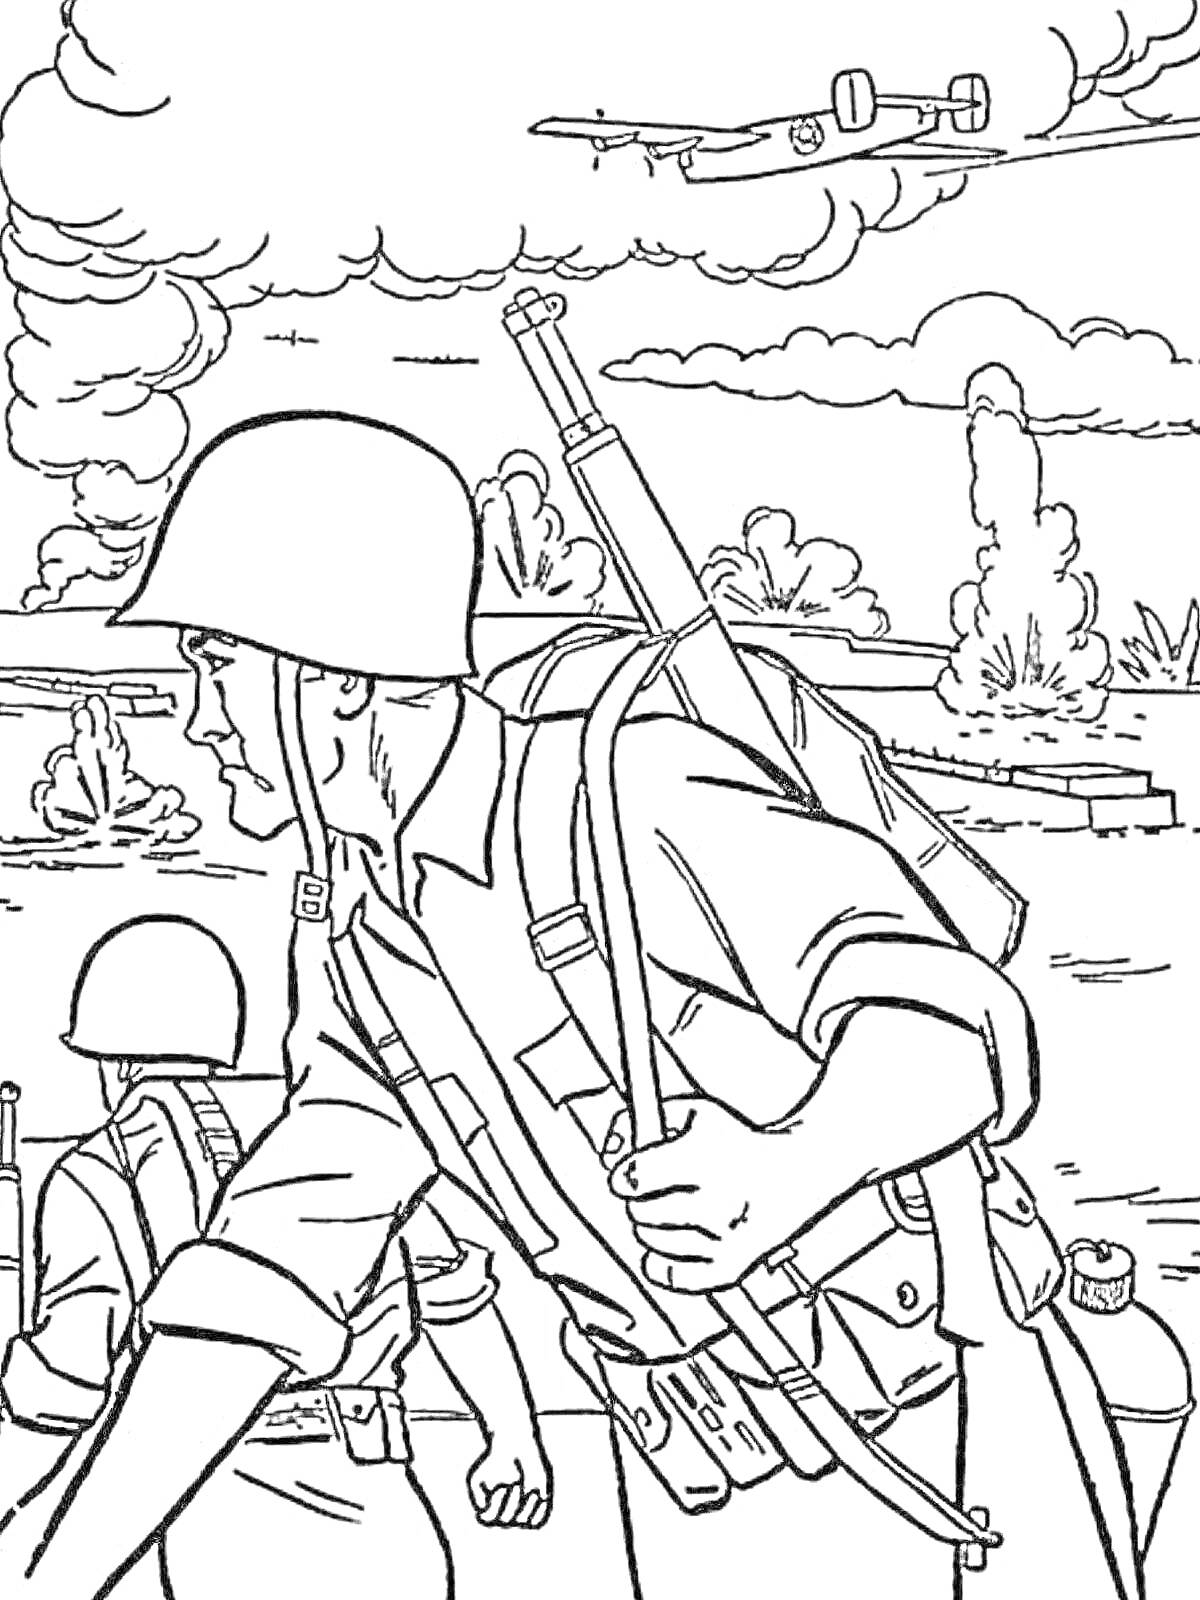 Раскраска Солдаты Великой Отечественной войны на передовой с винтовками, шлемами и военной техникой на фоне